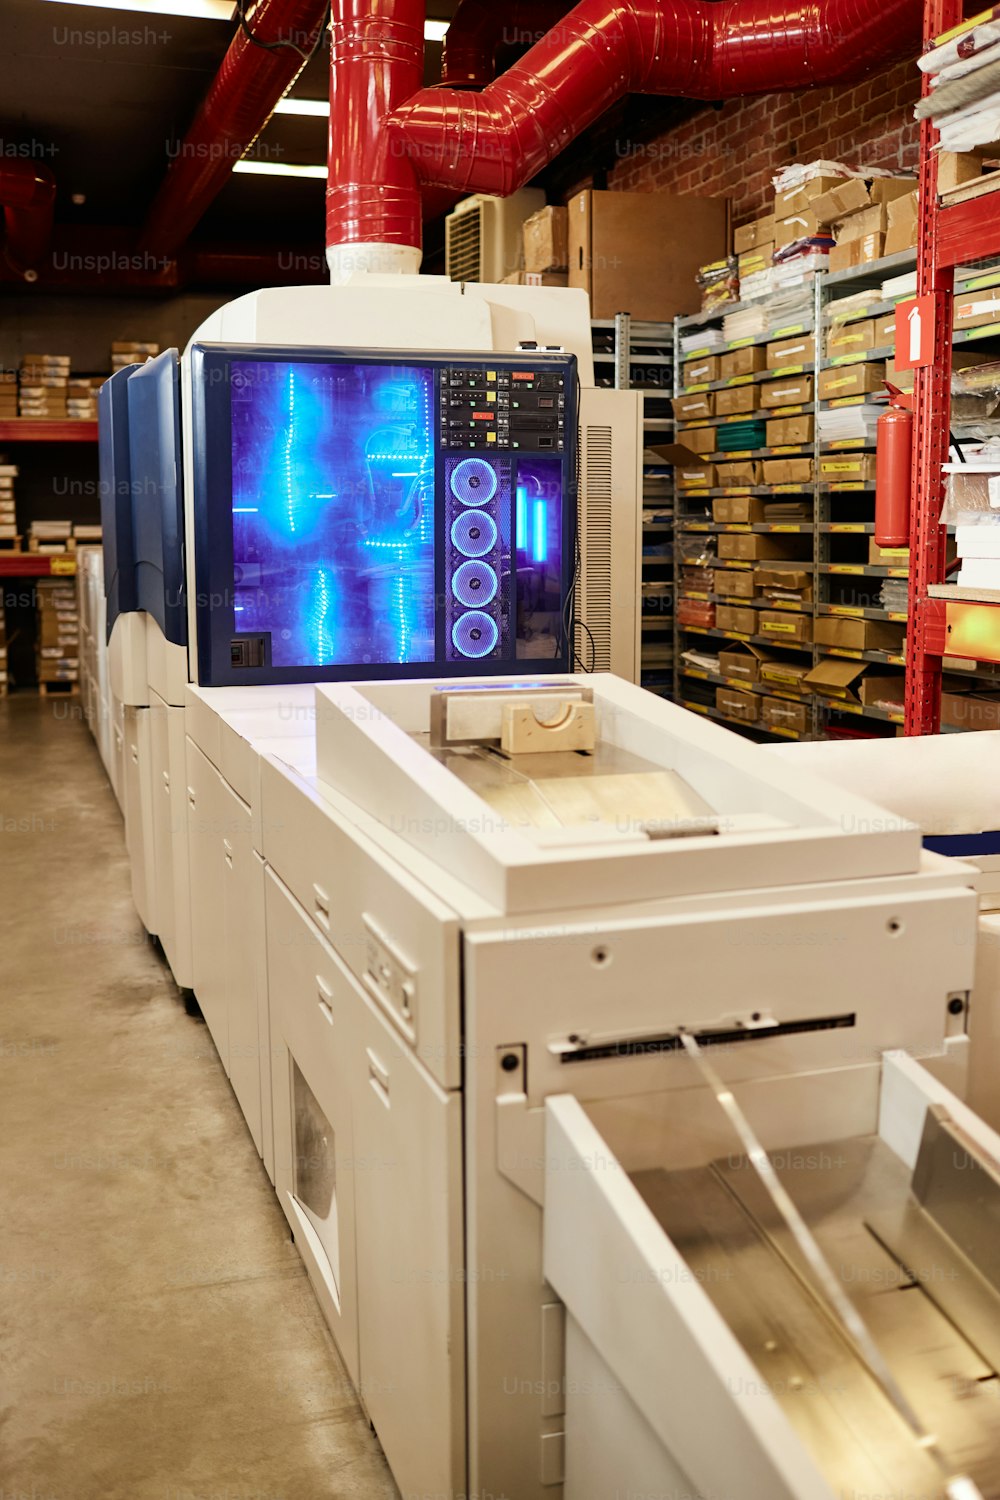 Imagen de fondo del taller de la fábrica de impresión con enfoque en la máquina de impresión brillante